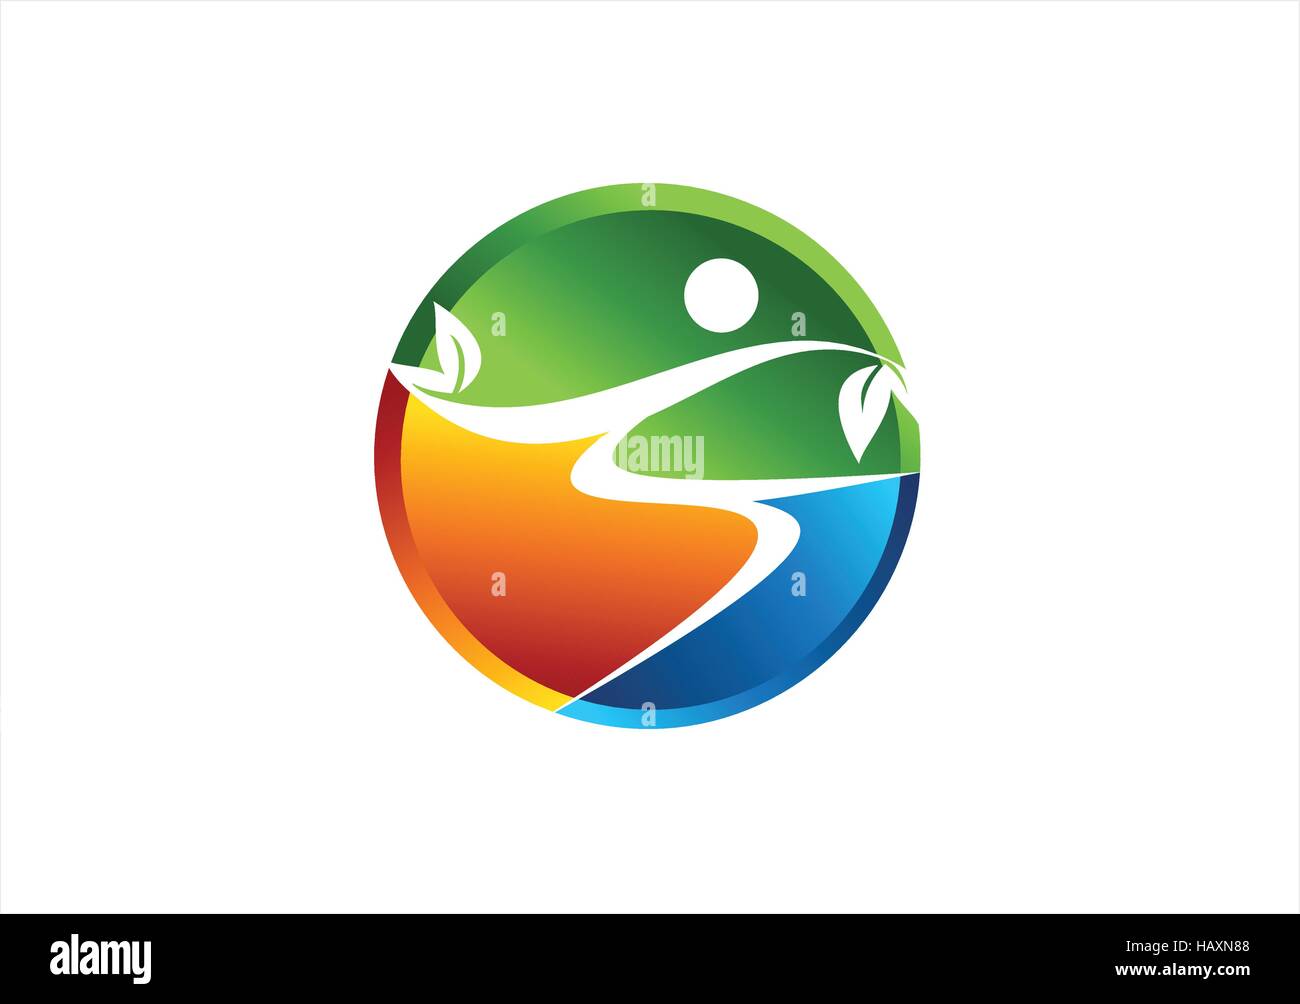 Cerchio nature wellness icona logo, abstract la salute naturale persone simbolo disegno vettoriale, global persone benessere concetto di logo Illustrazione Vettoriale